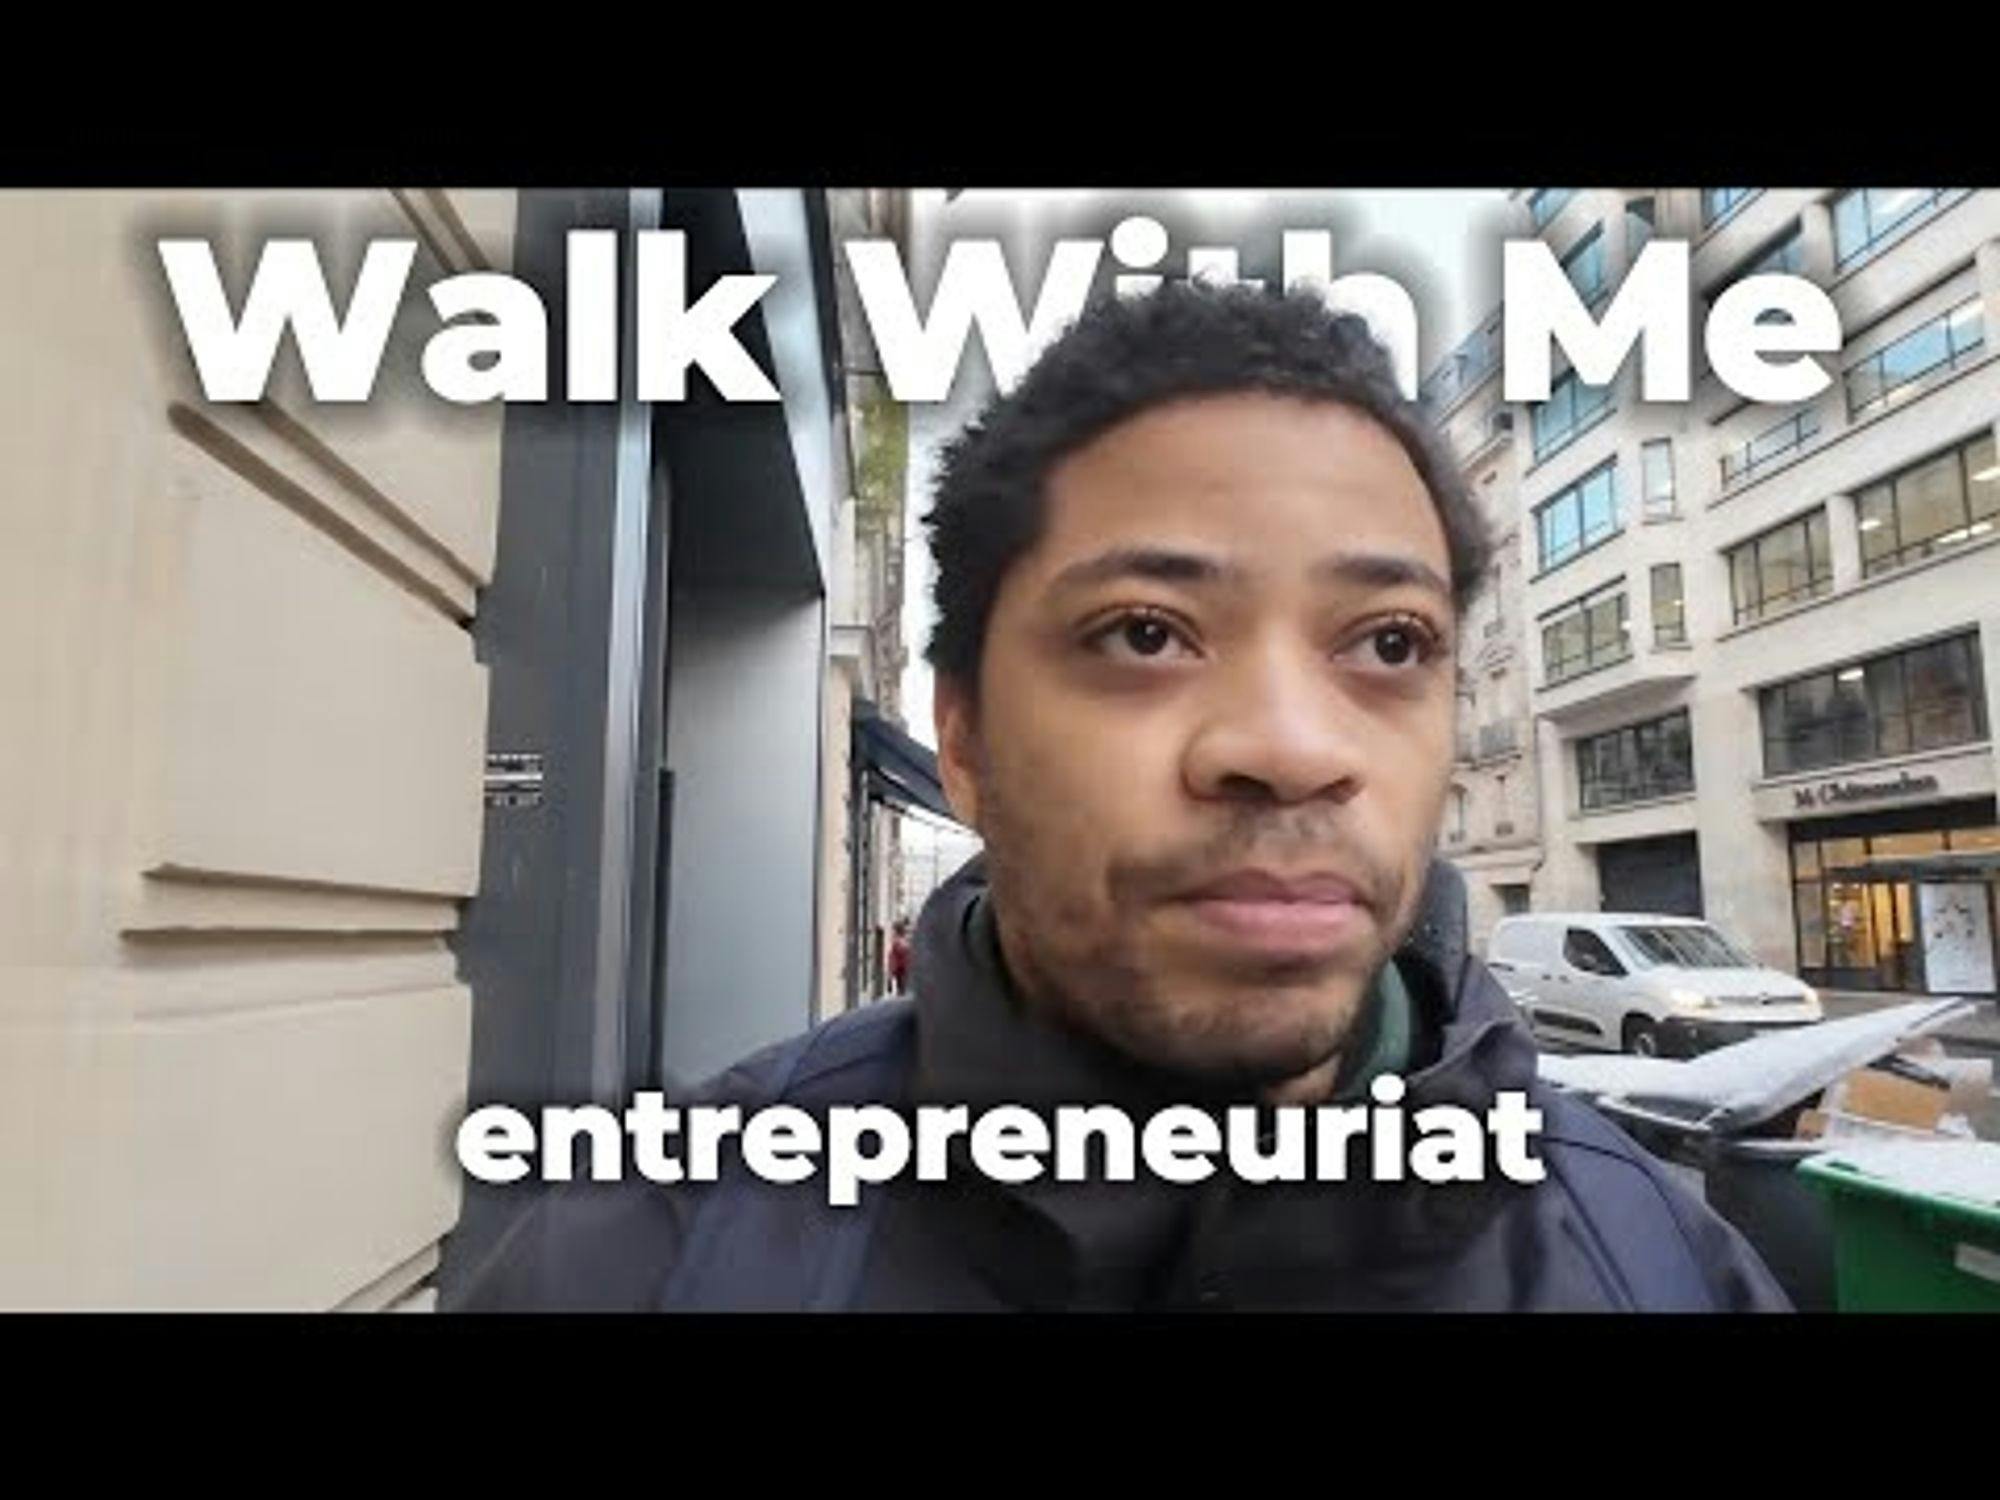 Comment commencer l’entrepreneuriat ? même mineur #walkwithme #ep7